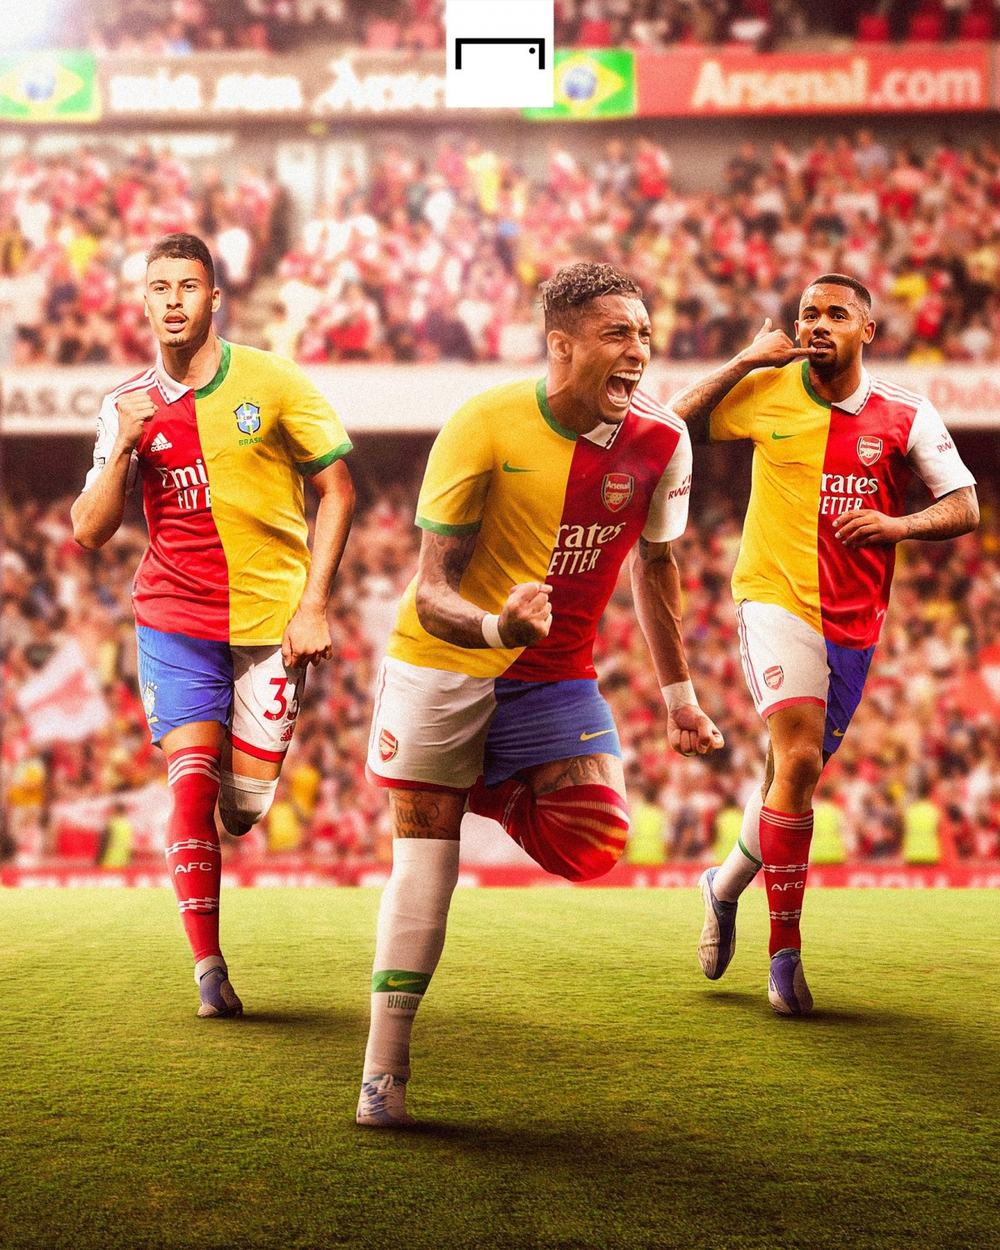 Biếm hoạ 24h: Arsenal xây dựng đội hình đậm chất Samba - Ảnh 1.